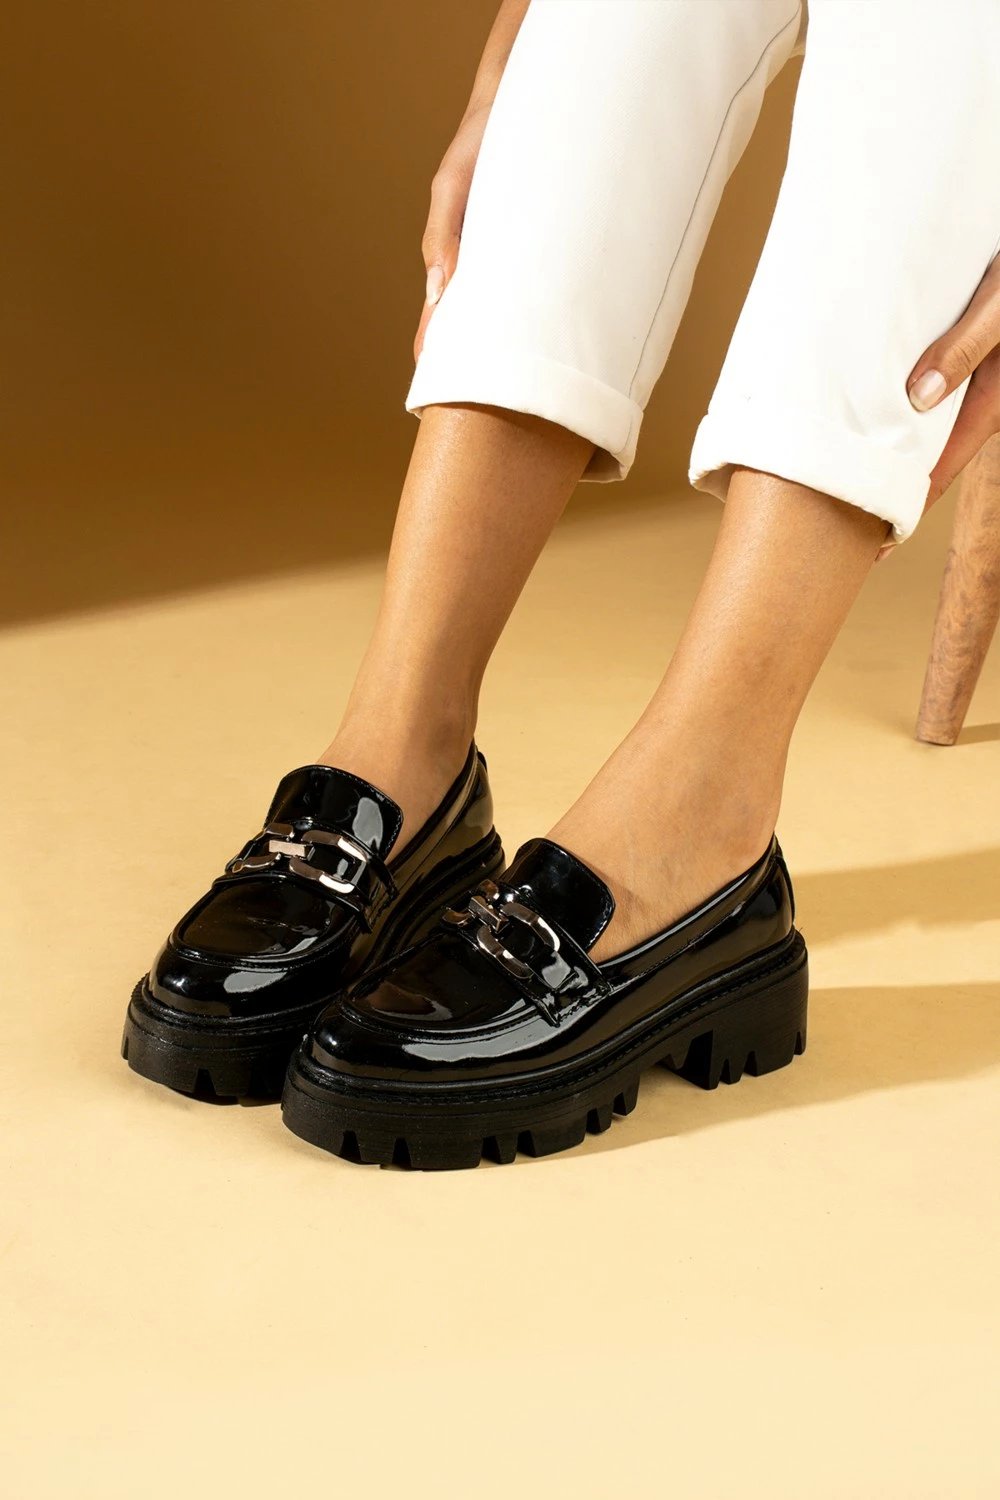 Këpucë për femra Pembe Potin, të zeza